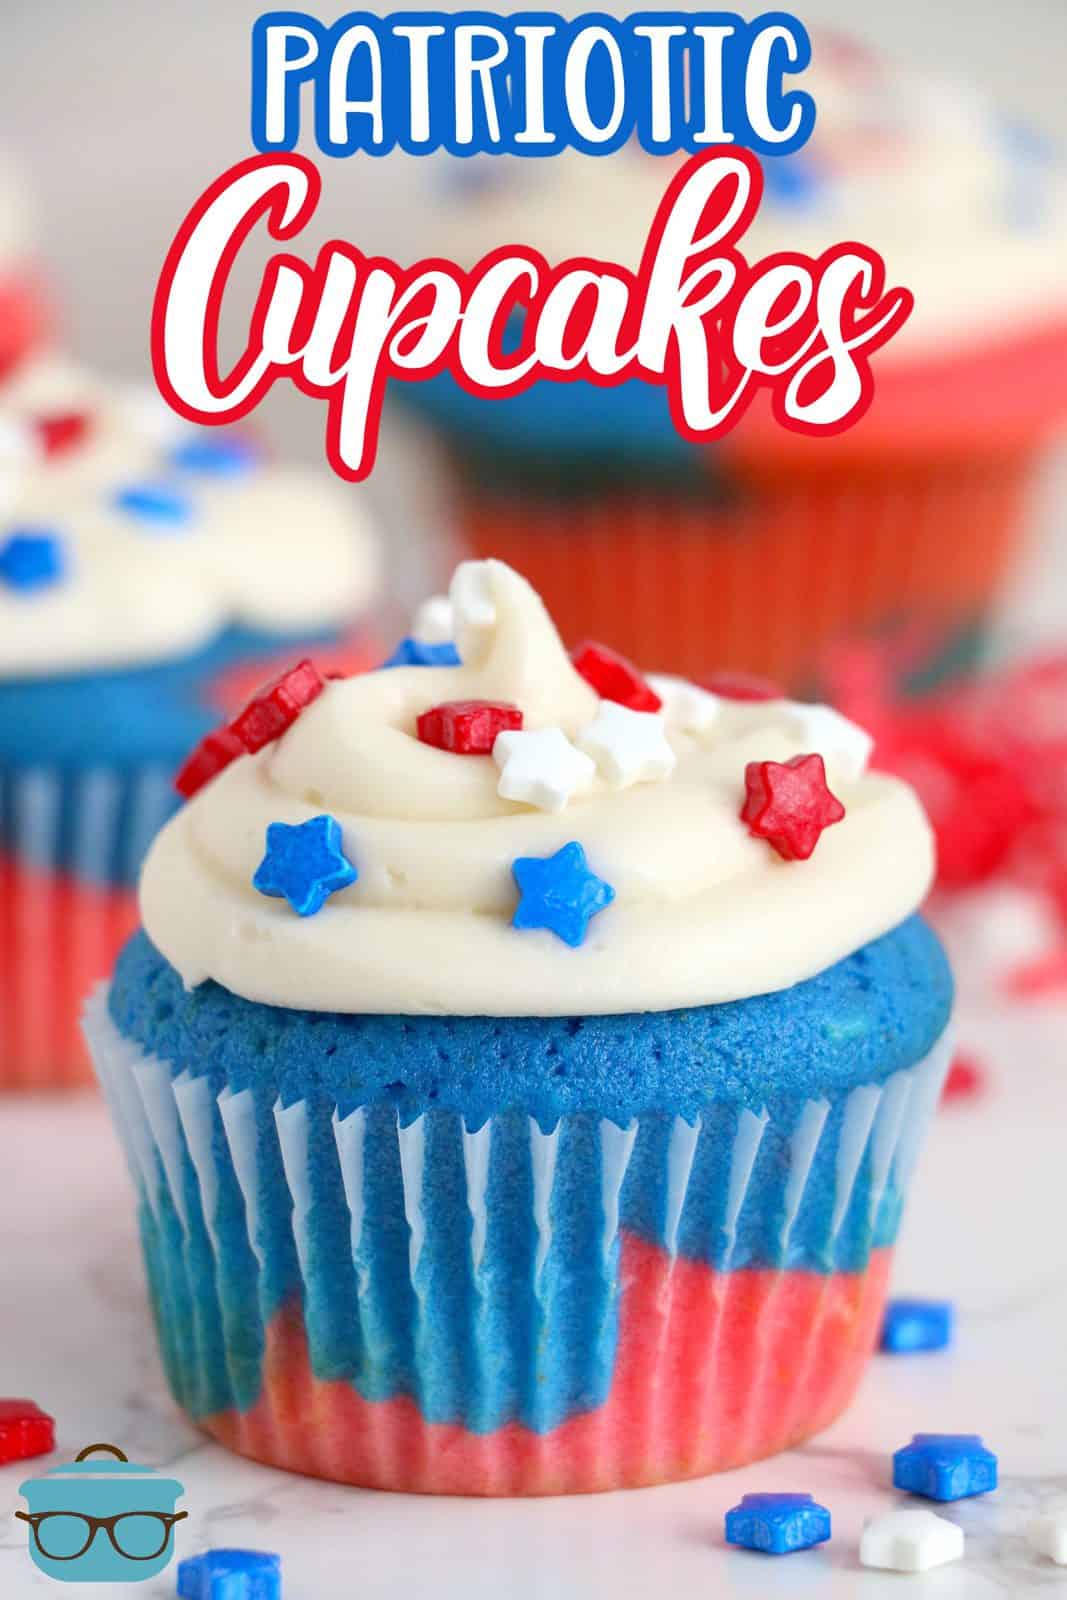 Immagine Pinterest di cupcakes rossi, bianchi e blu finiti e decorati.